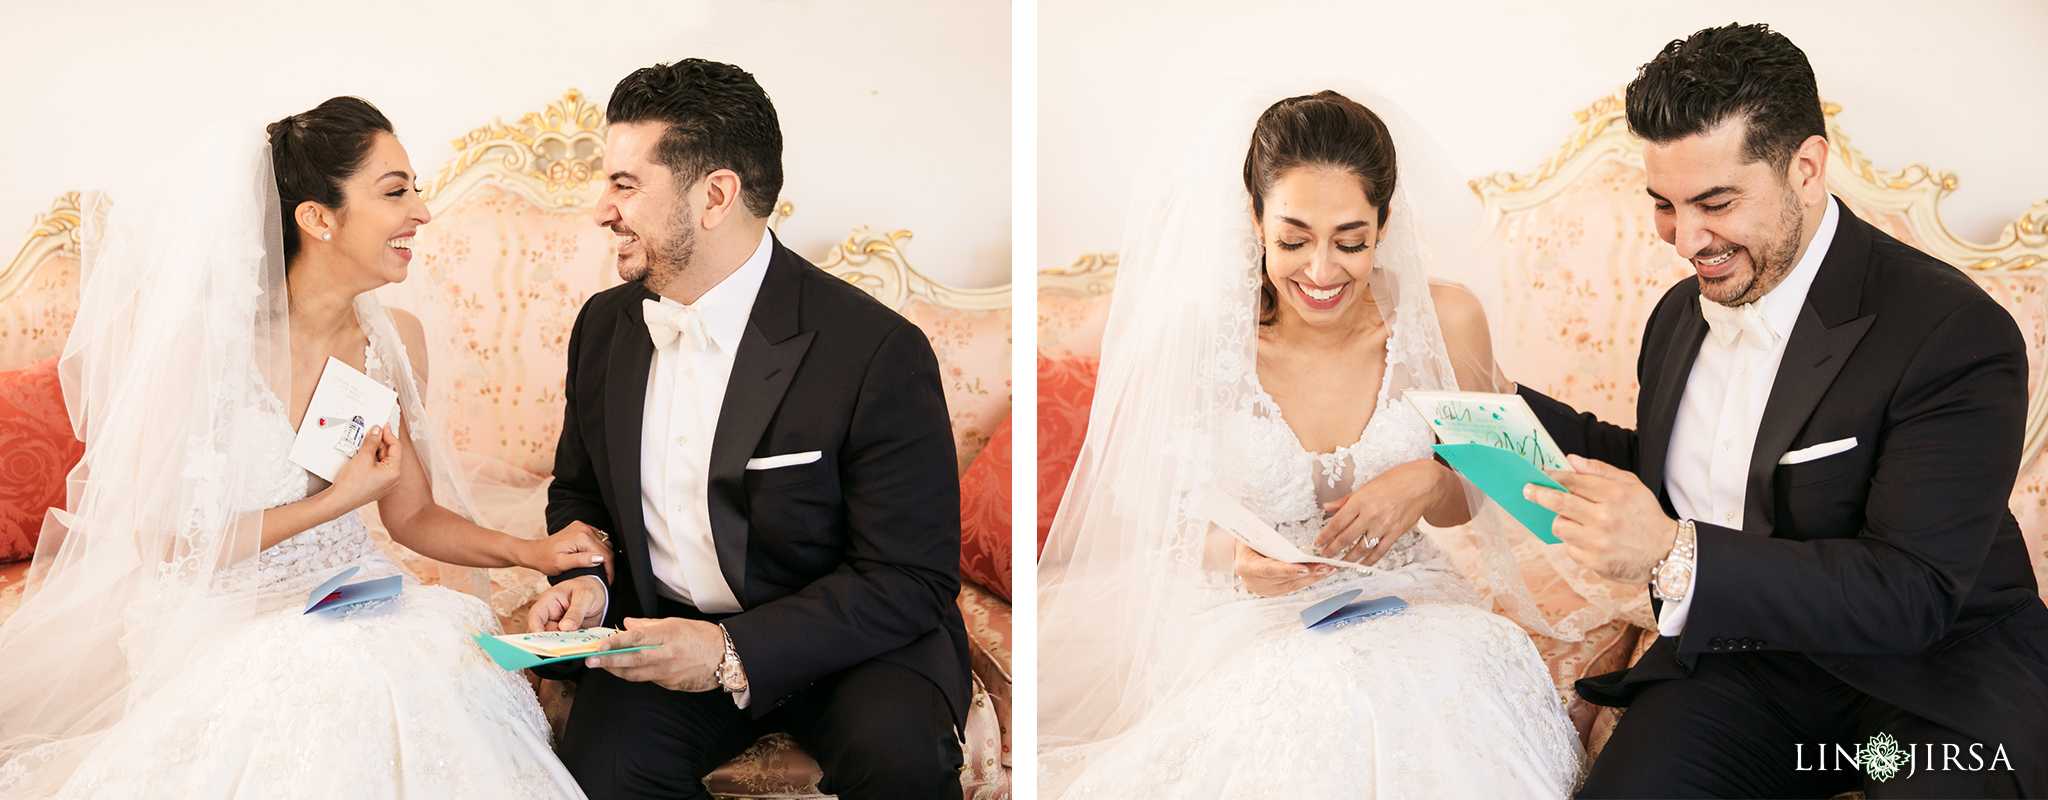 12 SkyStudio Los Angeles Persian Wedding Photography